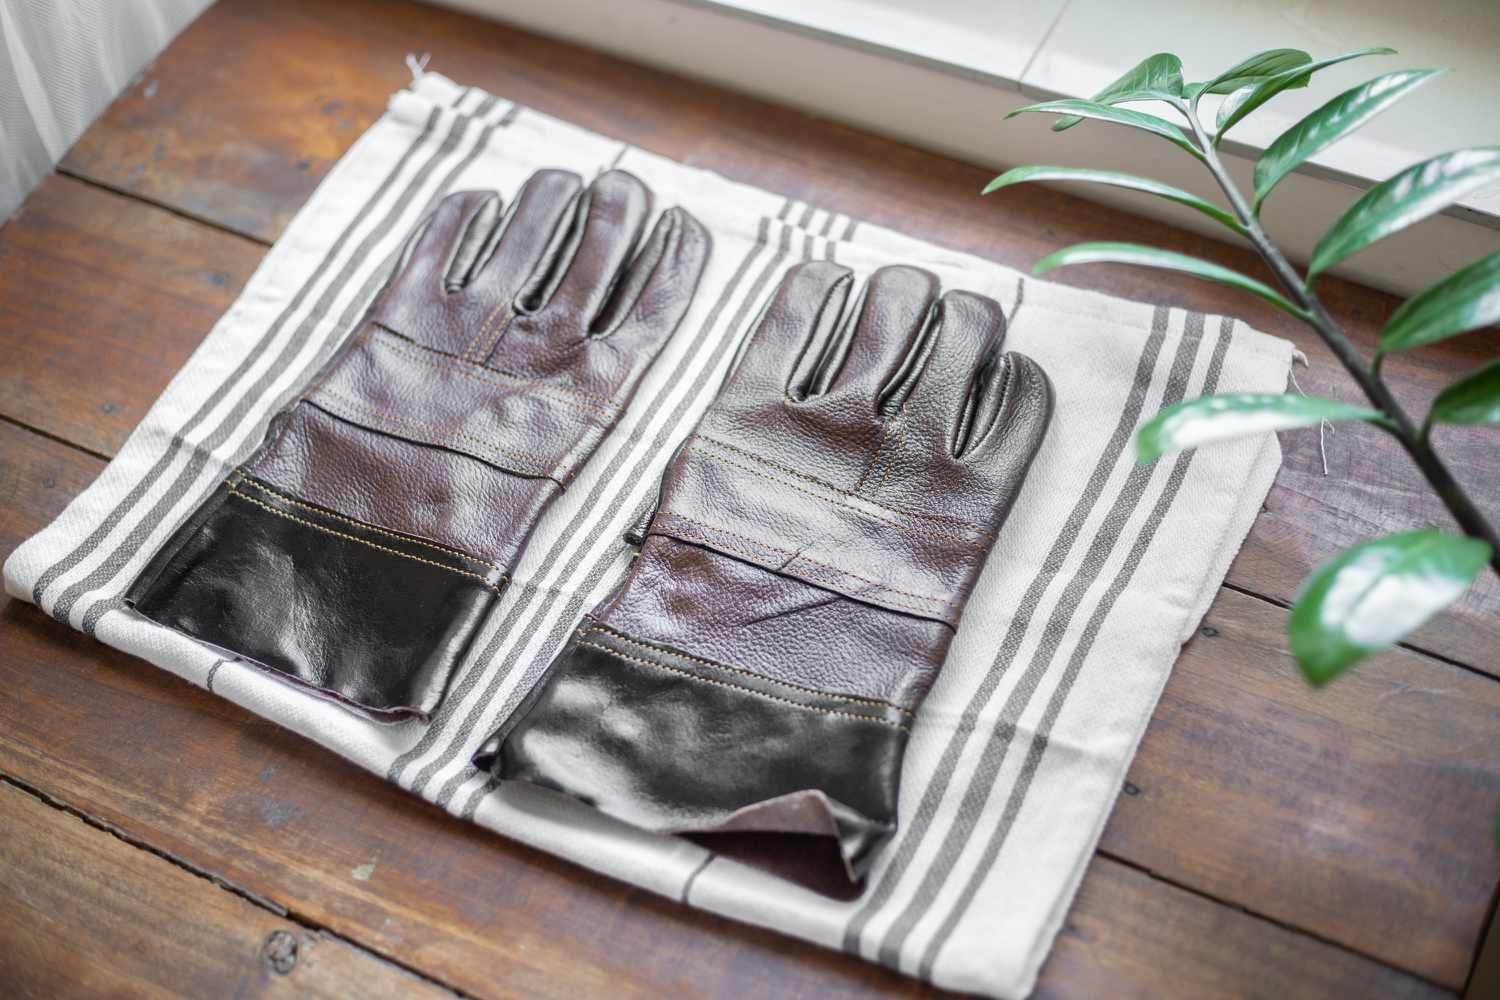 Lederhandschuhe zum Lufttrocknen auf ein gestreiftes Handtuch gelegt